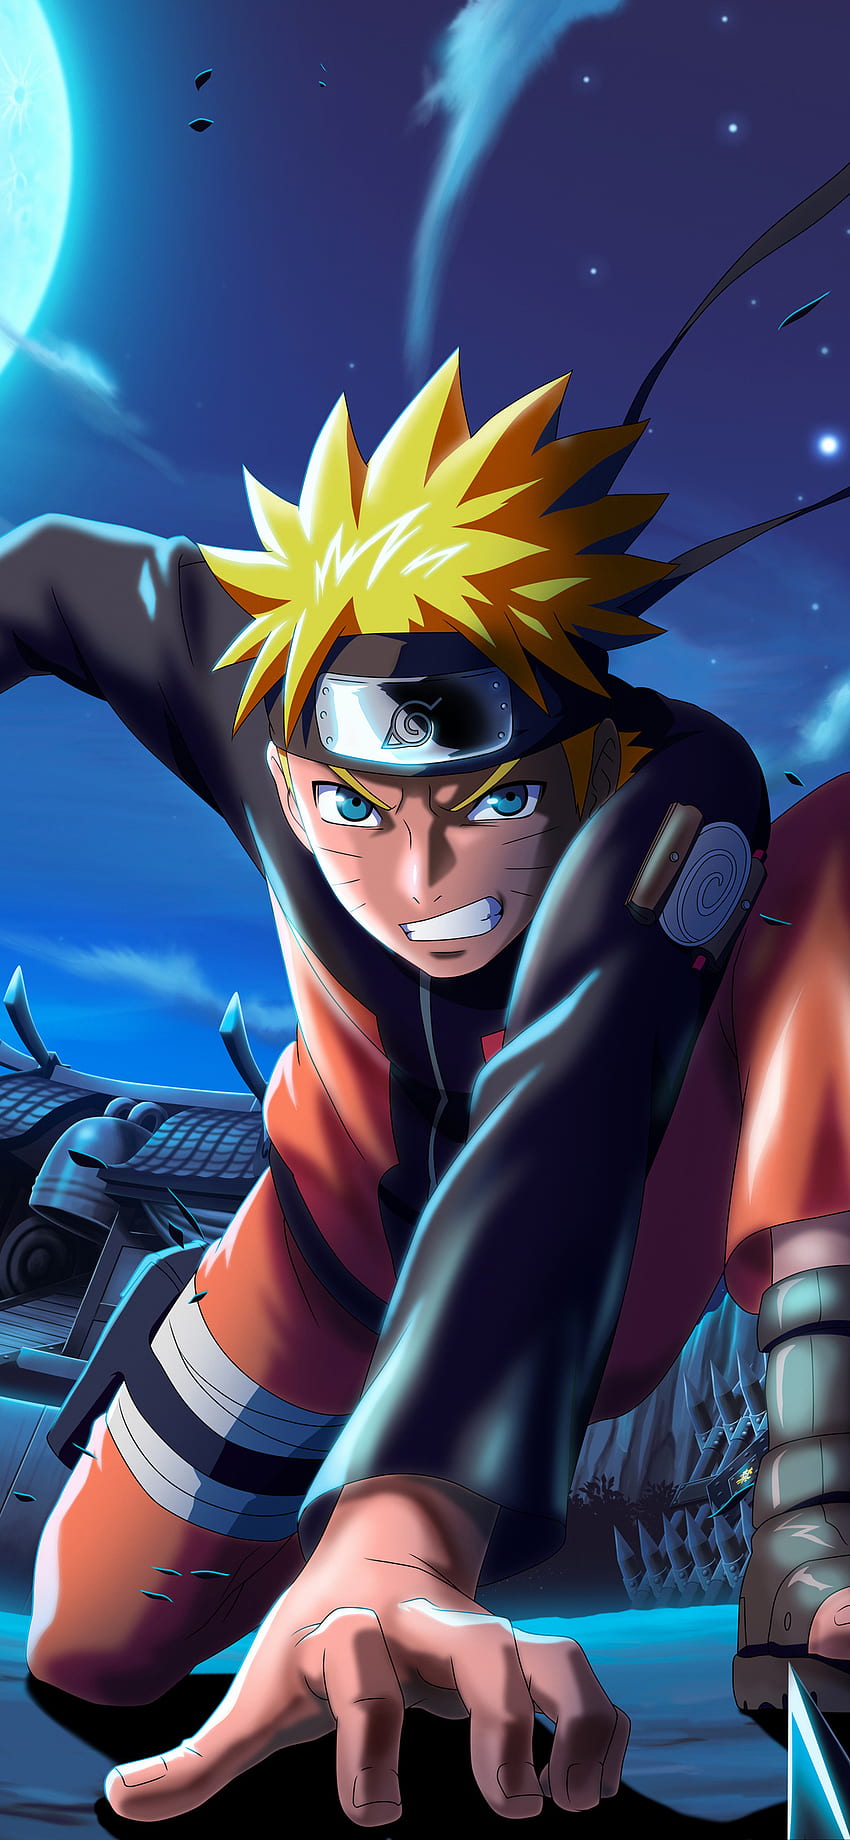 Rải nhiệm Naruto X Boruto Ninja Voltage trên iPhone XS MAX! Với đồ họa tuyệt đẹp và nhiều tính năng thú vị, trò chơi này sẽ khiến bạn thích thú không ngừng. Hãy tải ngay và trải nghiệm cùng ninja yêu thích của bạn!